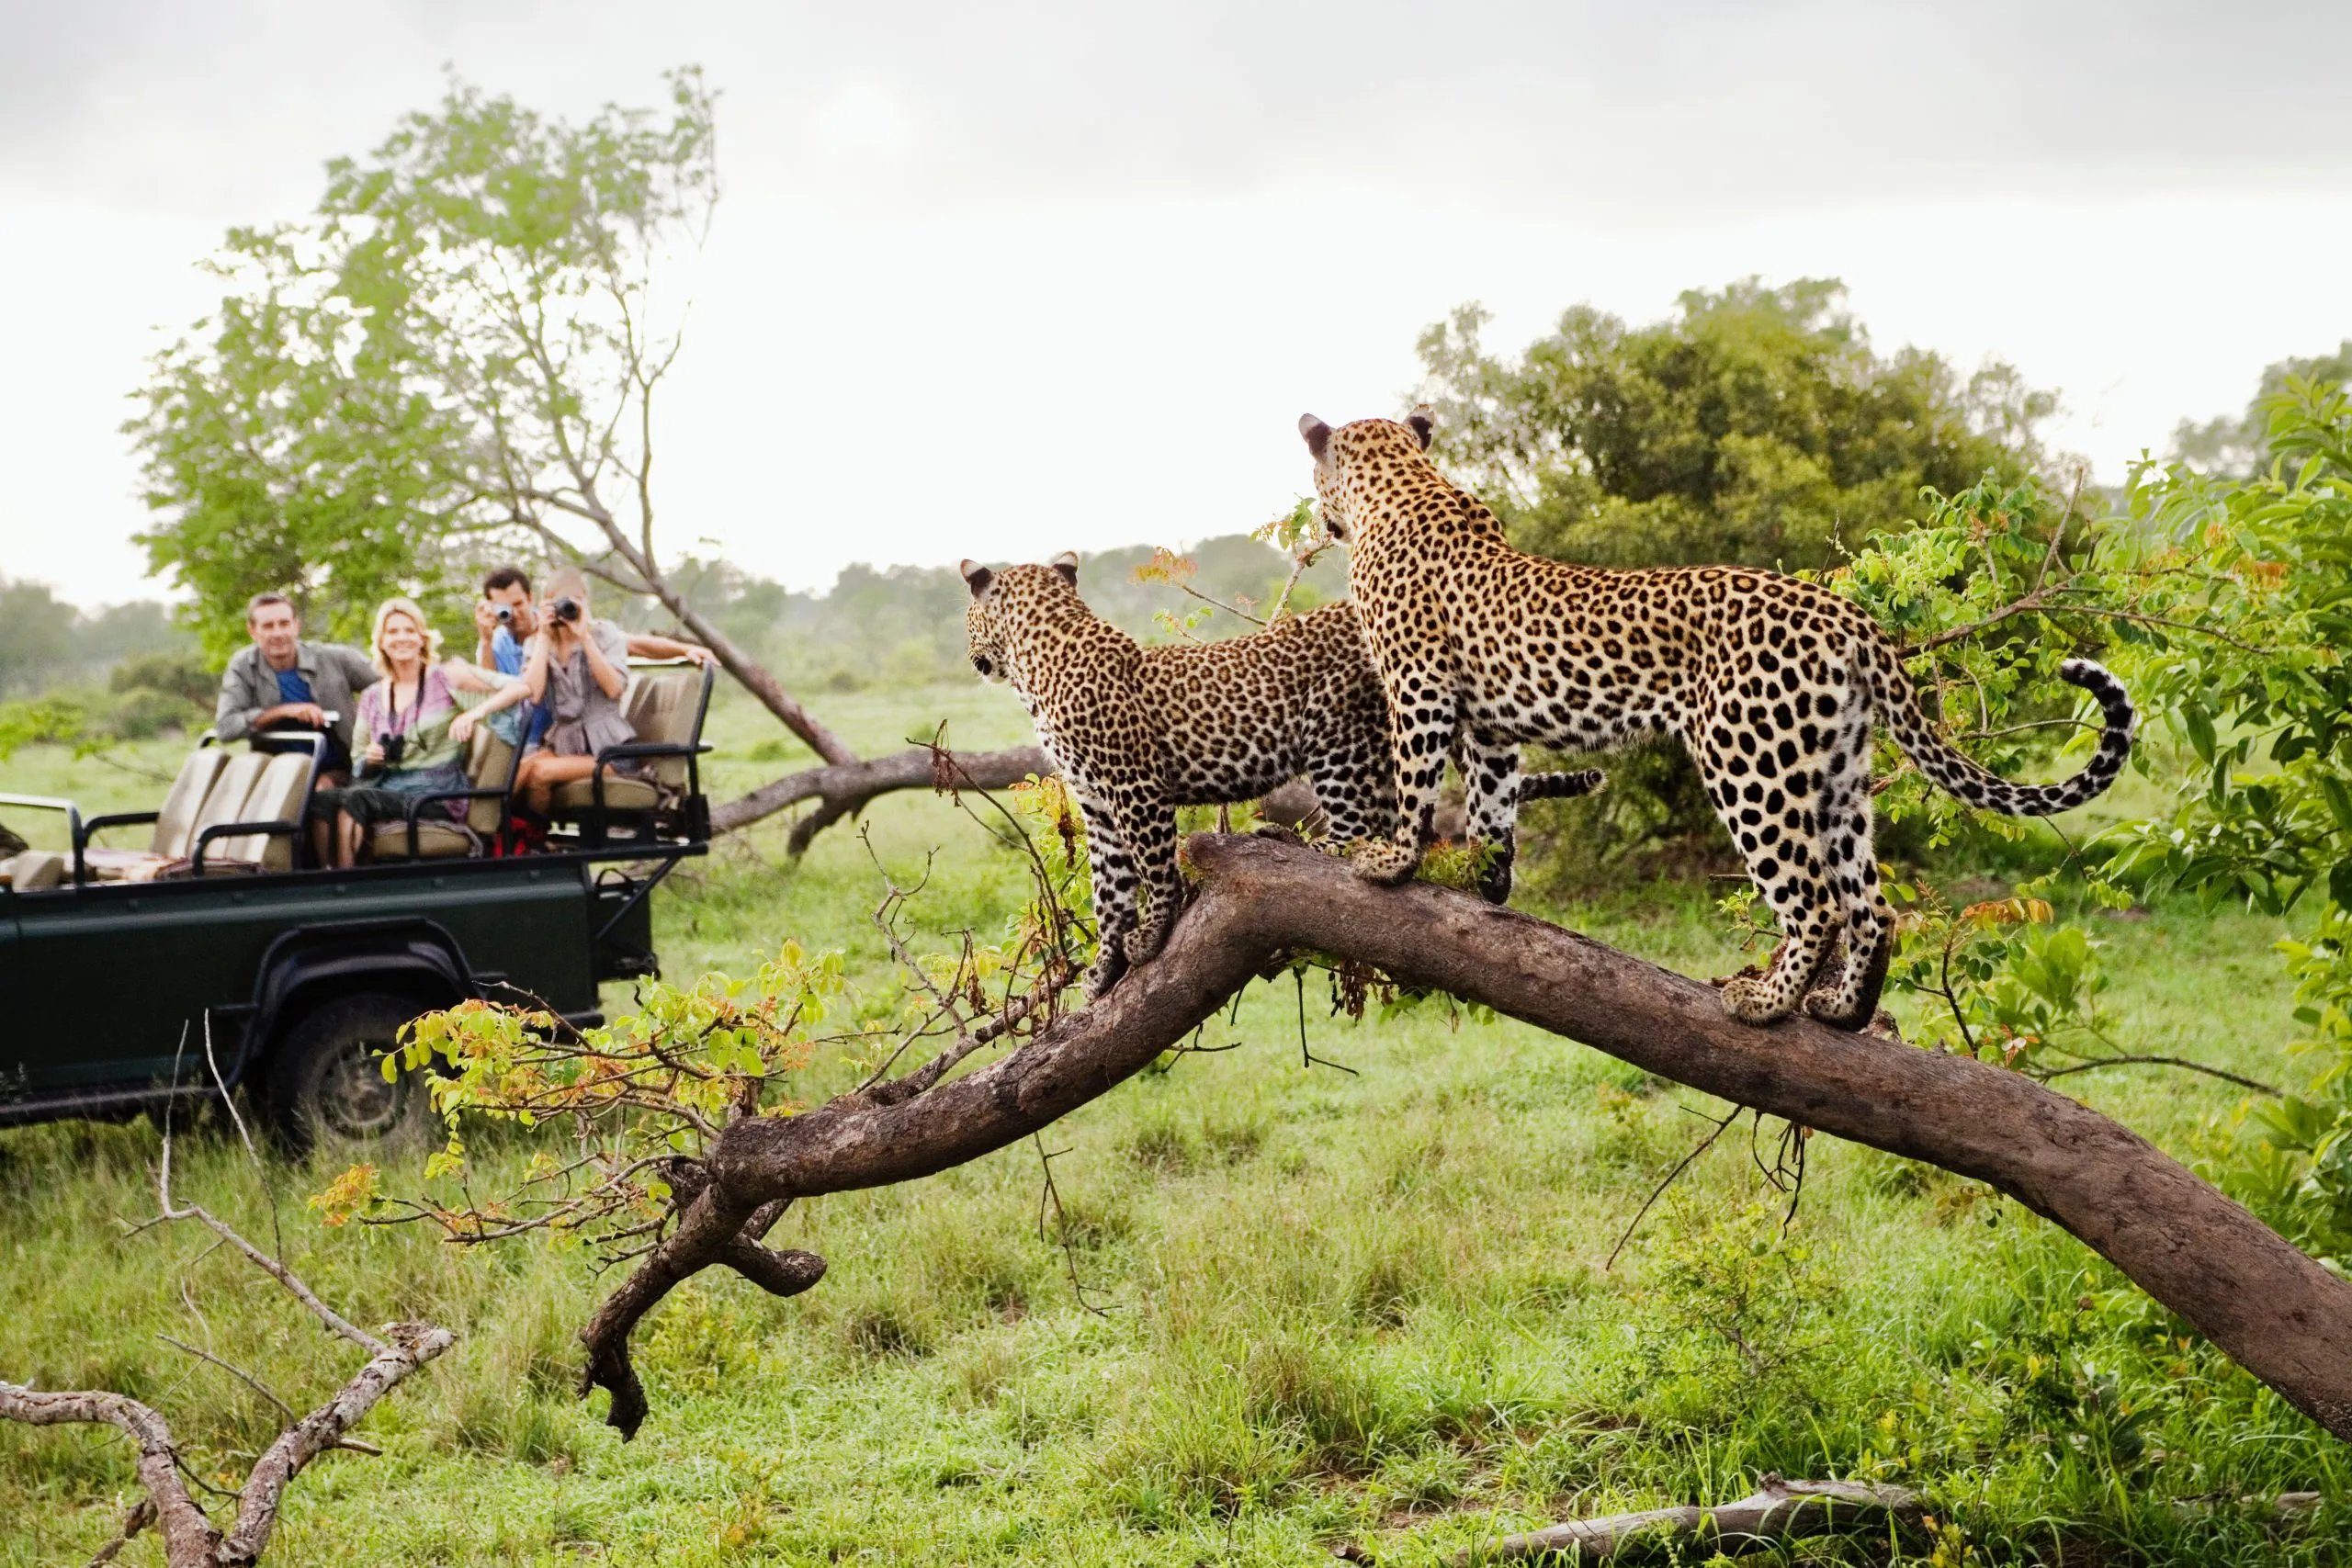 Kaksi leopardia puun päällä katsomassa turisteja jeeppiin takanäkymä